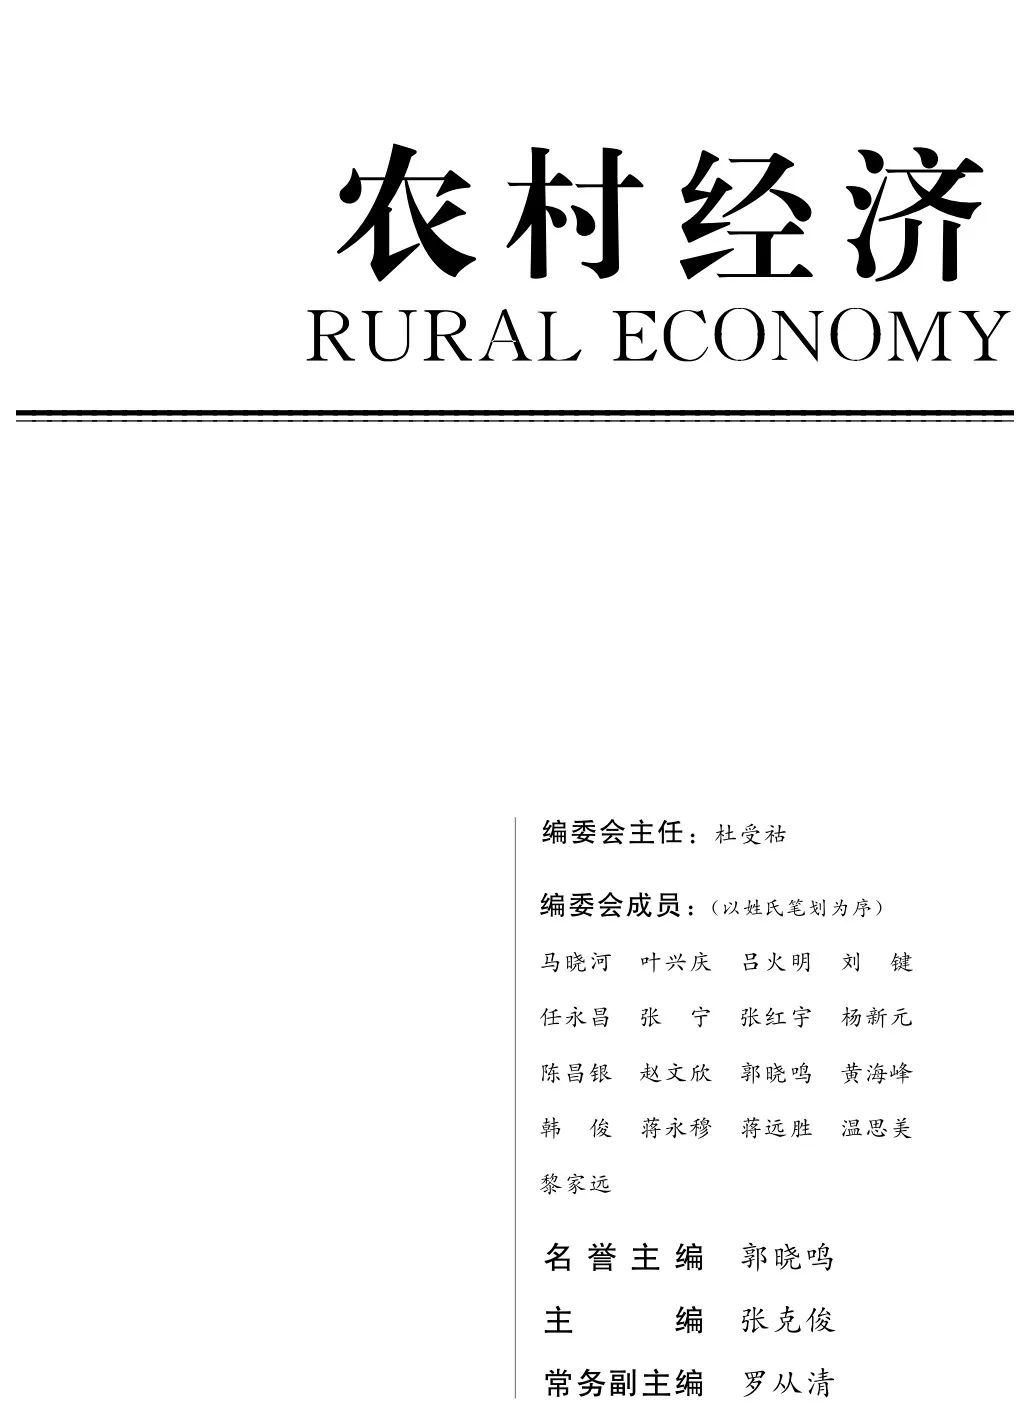 期刊速递｜《农村经济》2020年第3期目录和重点文章摘要